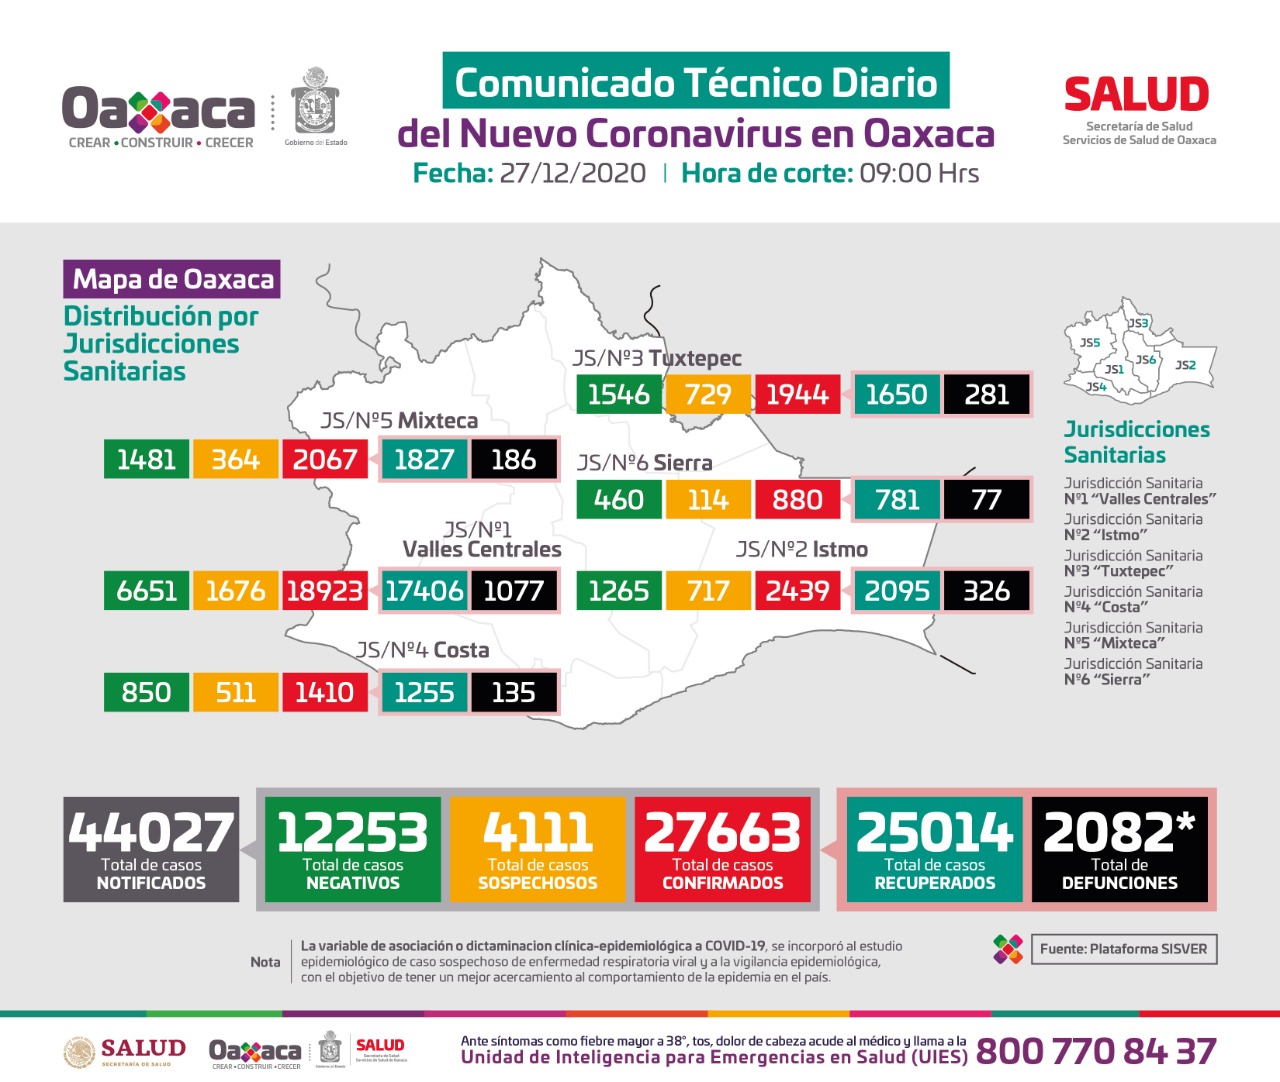 Asciende a 27 mil 663 número de casos acumulados de Covid-19 en Oaxaca